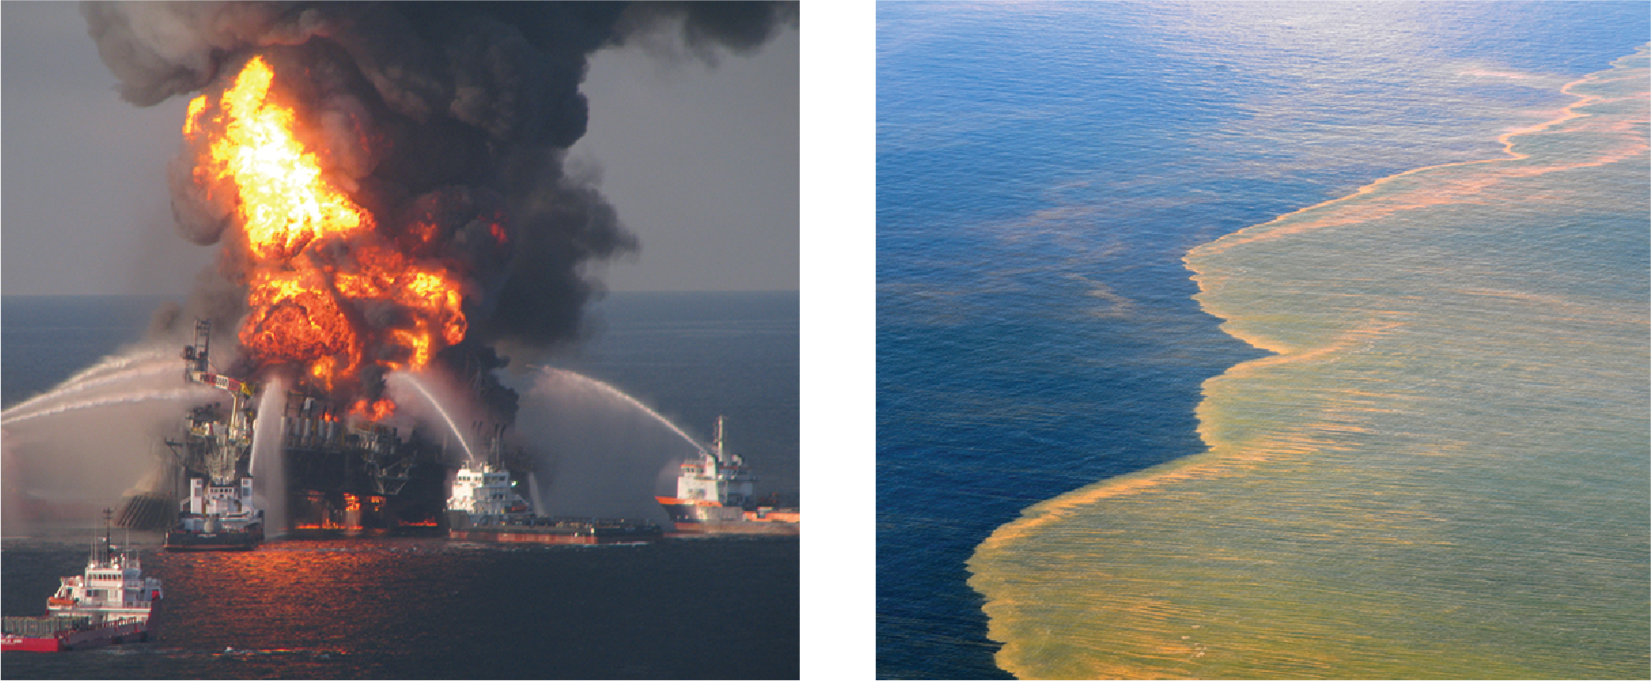 على اليسار: نشب حريق في منصة Deepwater Horizon النفطية، محاطة بسفن متعددة تقوم برش مواد إخماد الحرائق. على اليمين: النفط العائم على سطح الماء في خليج المكسيك.